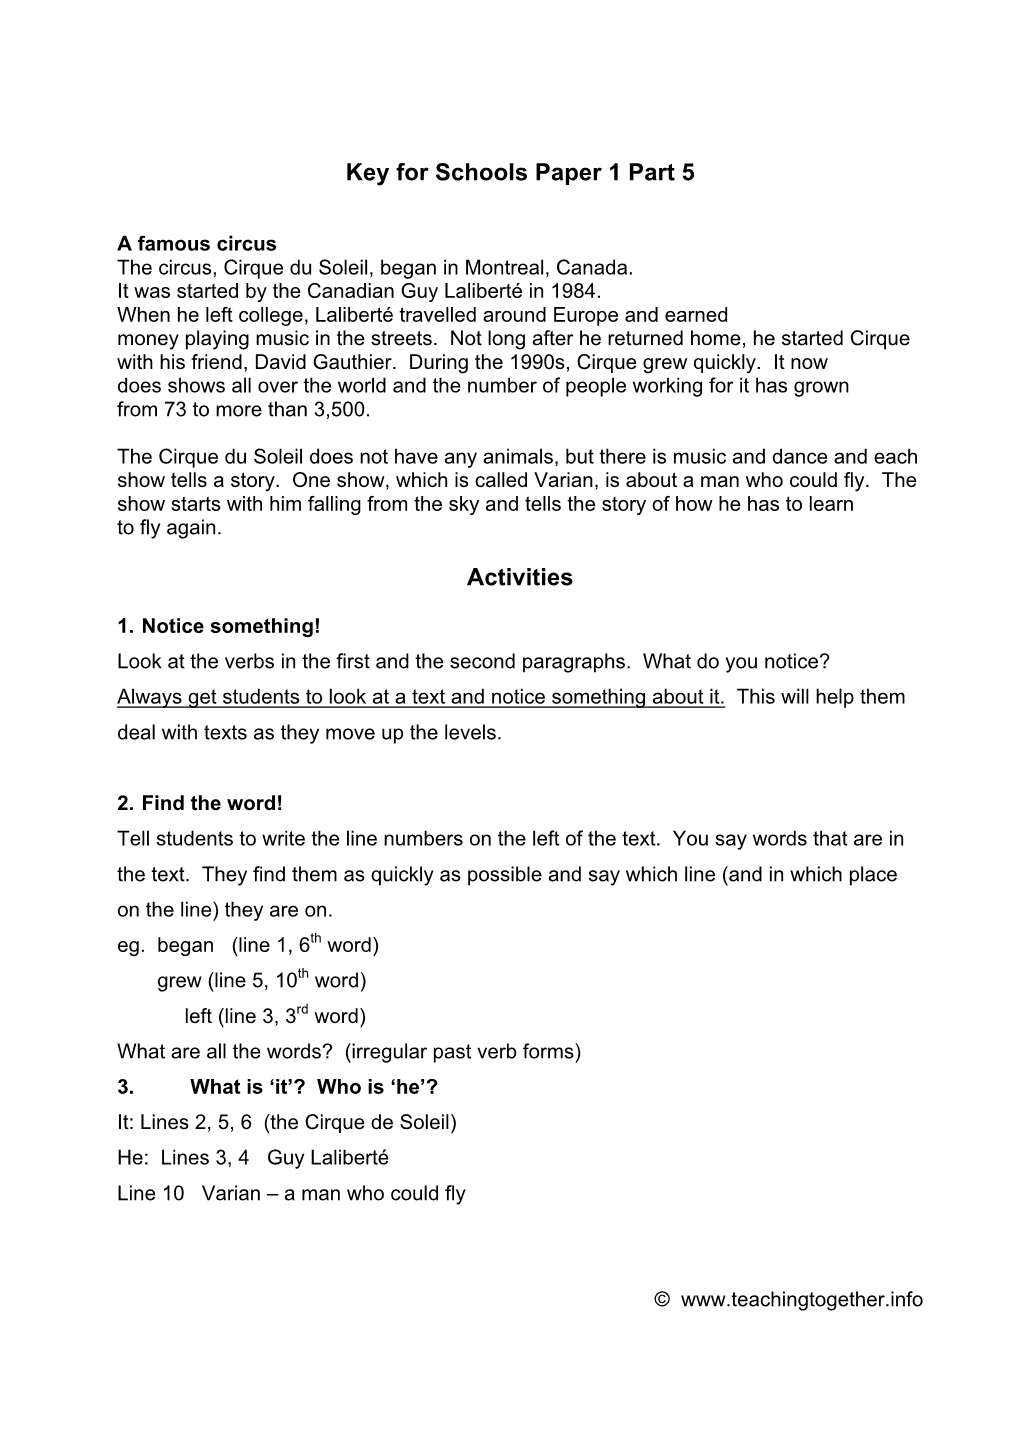 Key for Schools Paper 1 Part 5 Activities